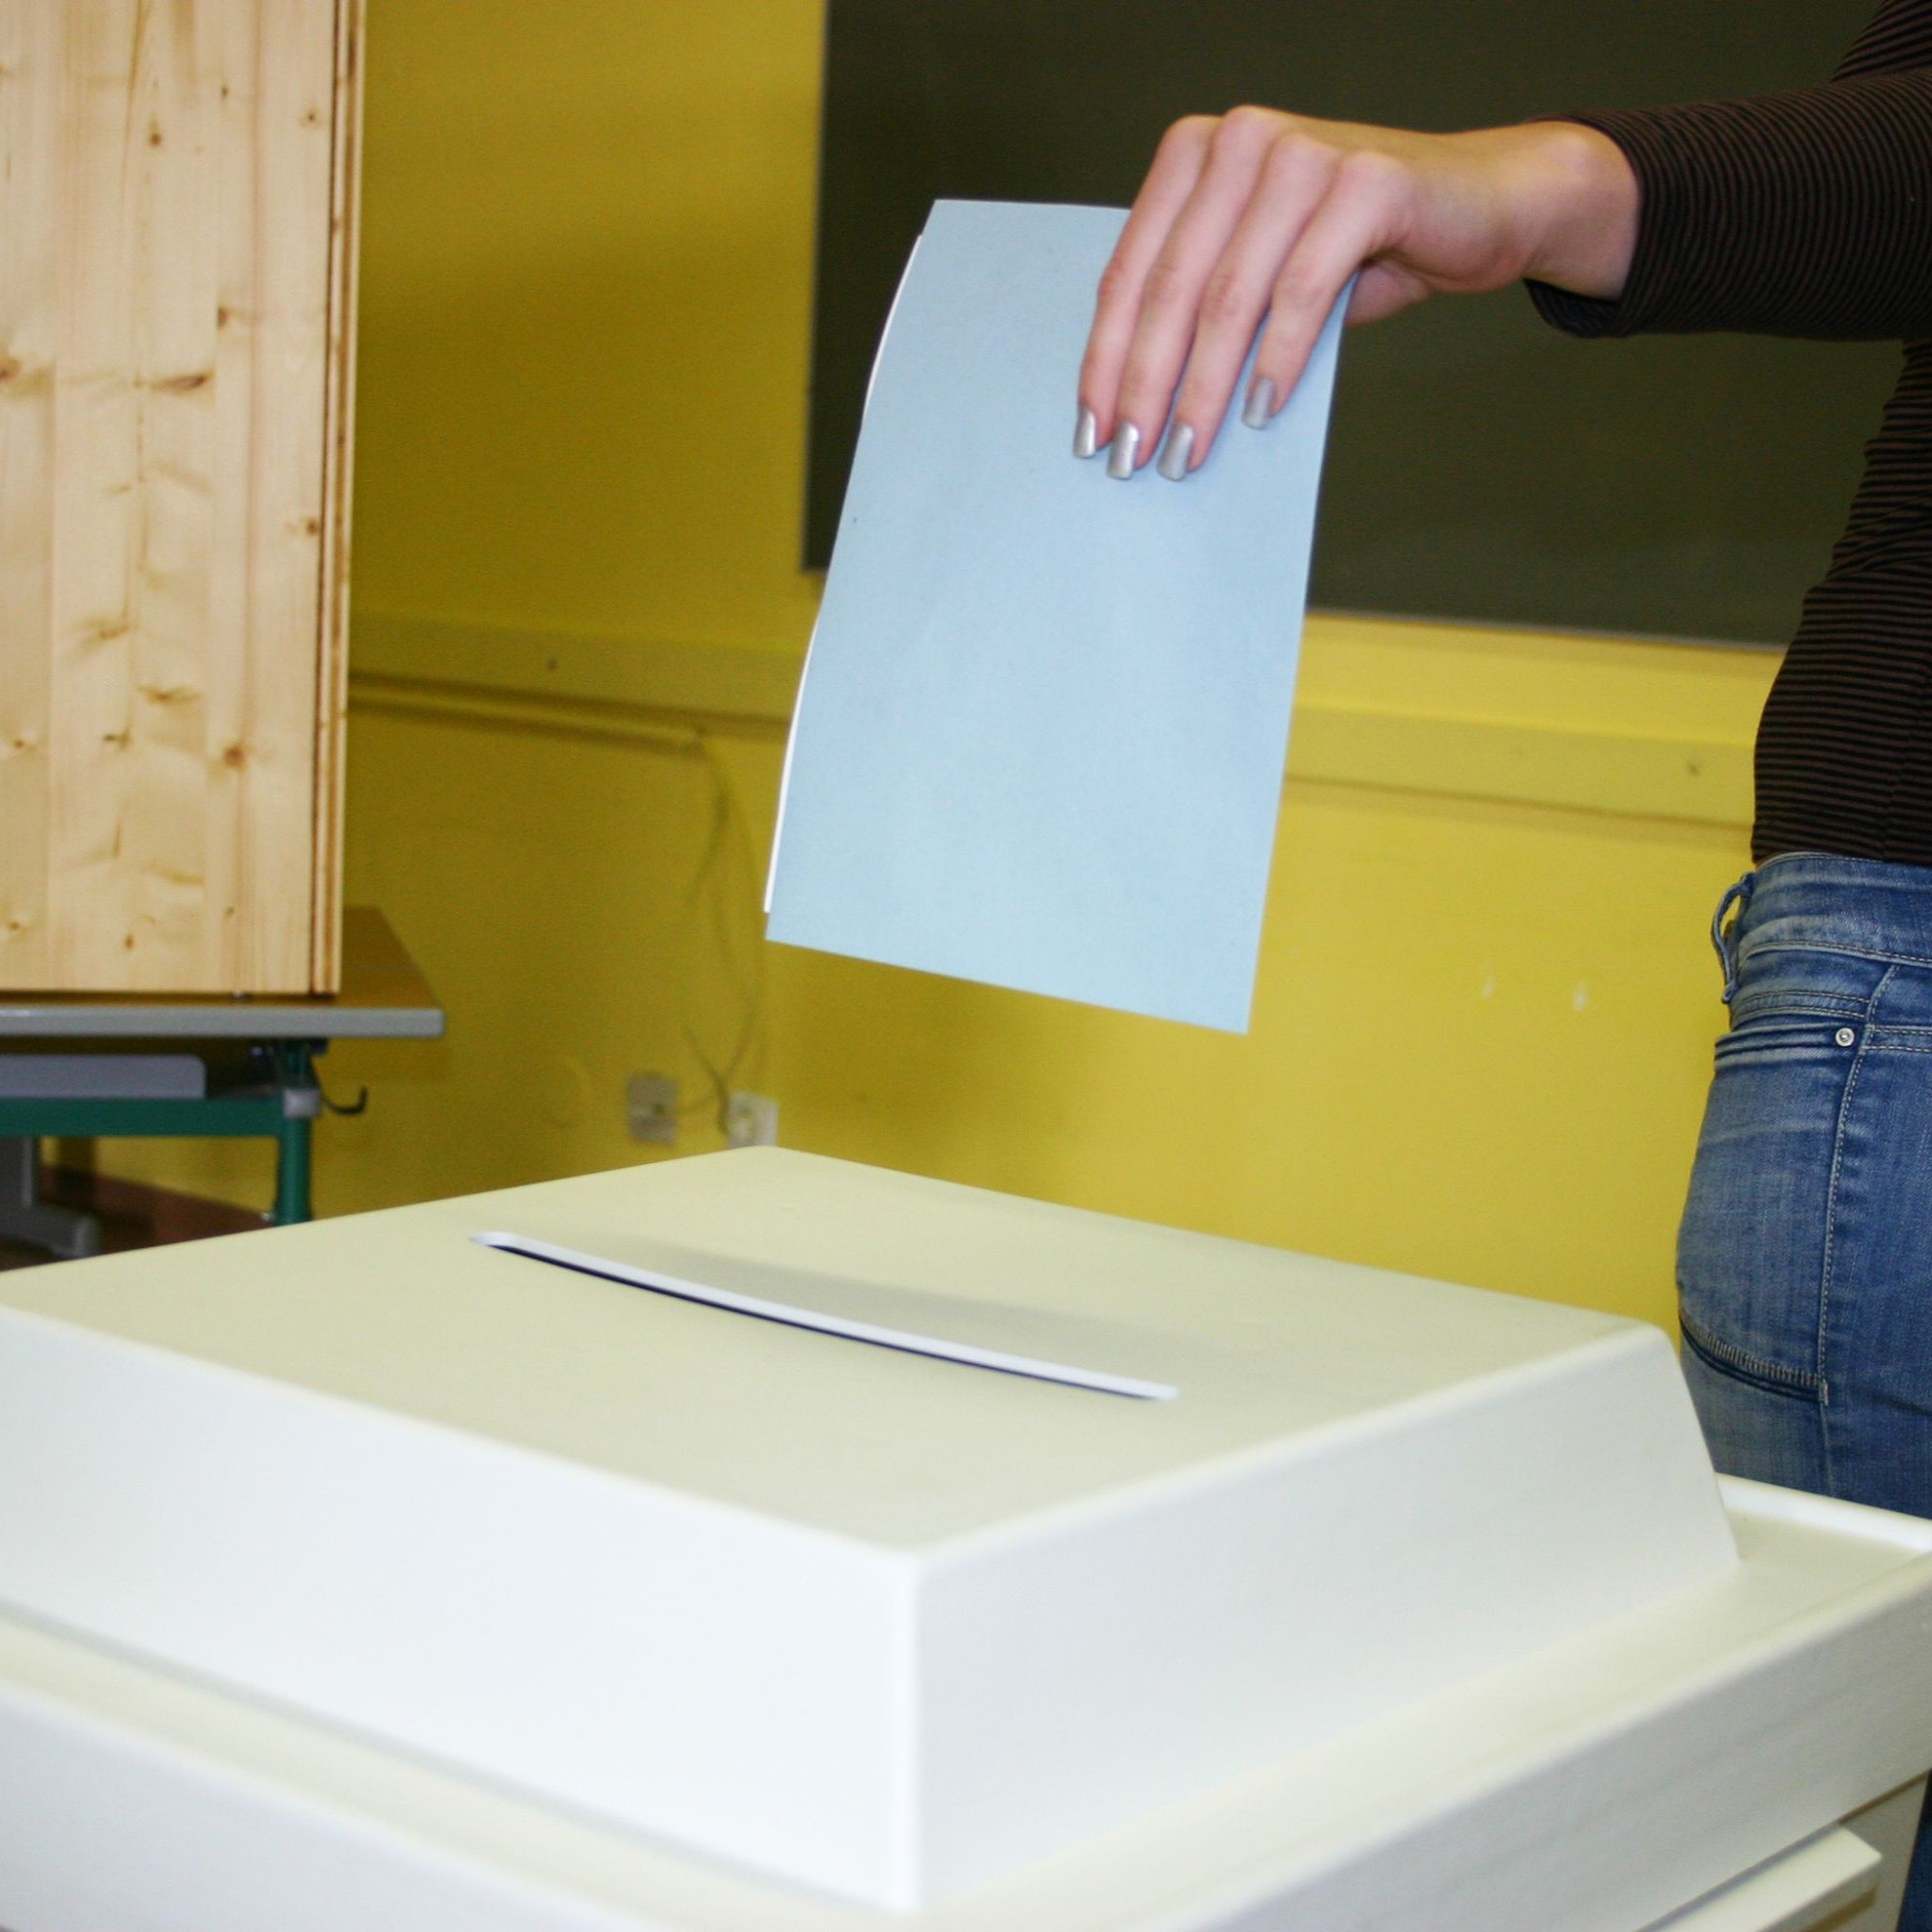 Abstimmung: Stimmzettel werden in die Urne geworfen